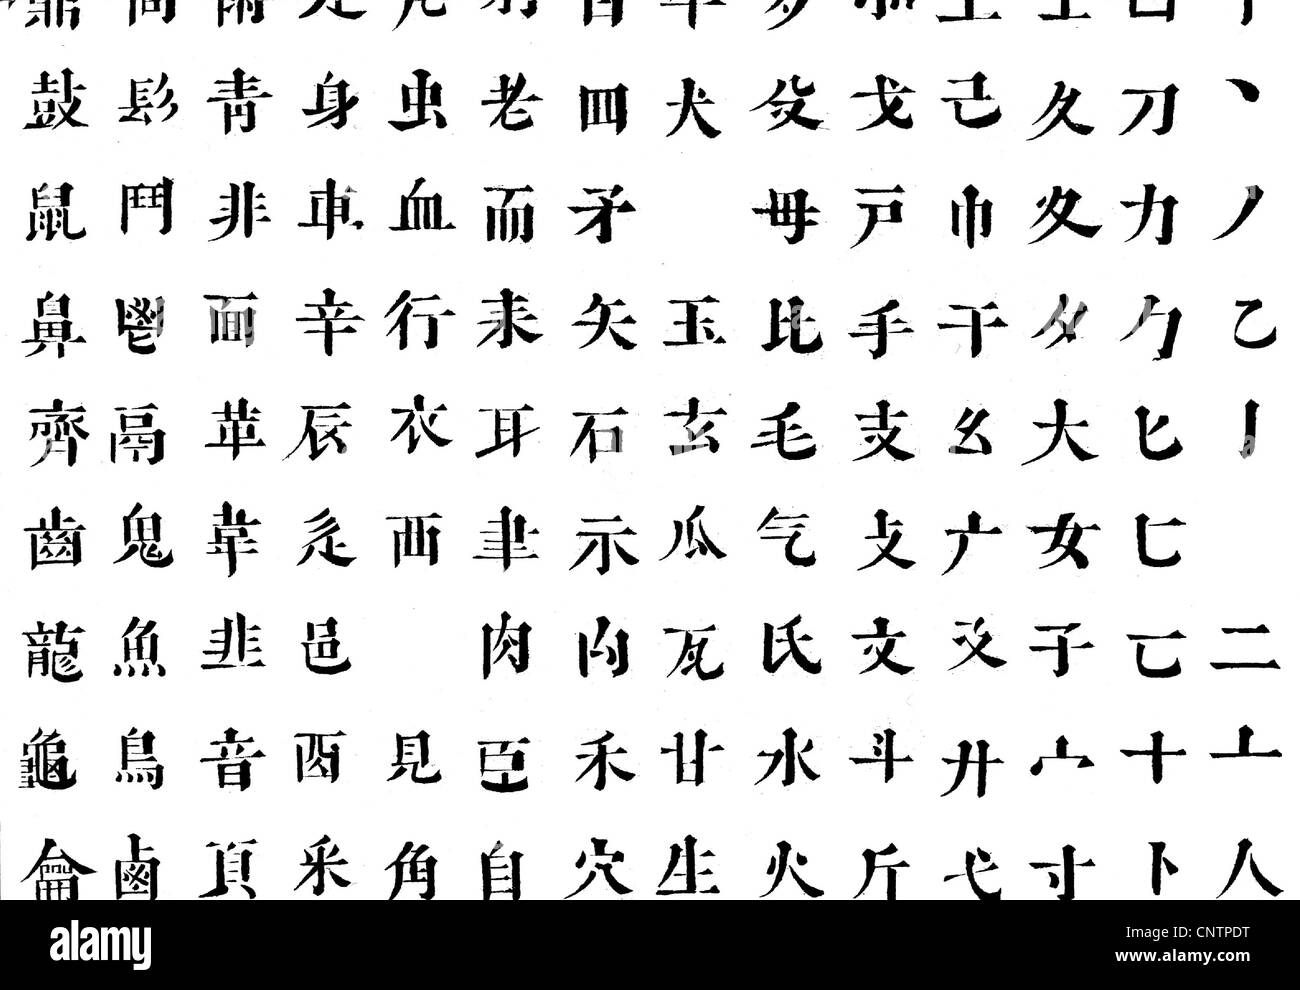 Chinesische schriftzeichen Schwarzweiß-Stockfotos und -bilder - Alamy